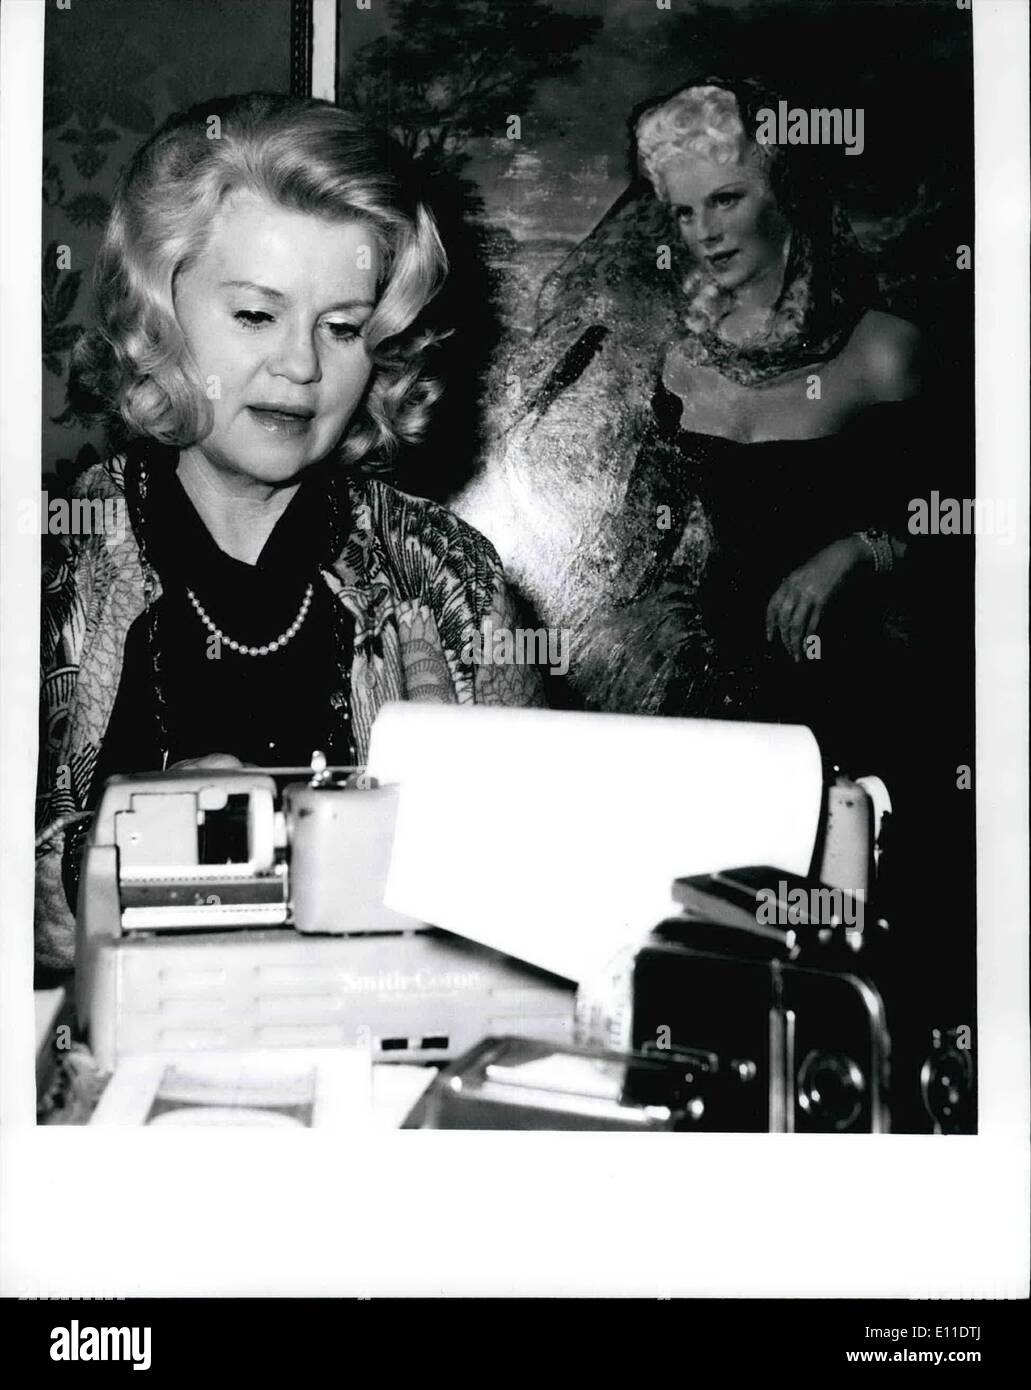 Sept. 05, 1977 - 5.9.77: 65. Geburtstag von Kristina Soderbaum ihren 65. Geburtstag feiert am 5. September 1977 die bekannte deutsche Schauspielerin und Fotografin Kristina Soderbaum (Kristine Soderbaum - unser Bild). Die Künstlerin, geboren in Stcokholm, spielte in Filme - meist von ihrem Ehemann Veit Iflarlan, starb im Jahre 1964 - als '' Jud SUB'', Chef. Goldene Stadt sterben '' (für die sie als beste Schauspielerin an der Biennale von Venedig im Jahr 1942 erhielt) Opfergang'', KOLBERG''. Reise Nach Tilsit sterben '', '' Der Grobe Konig. Etc, und nach dem zweiten Weltkrieg in dem Film '' Verrat ein Deutschland Stockfoto